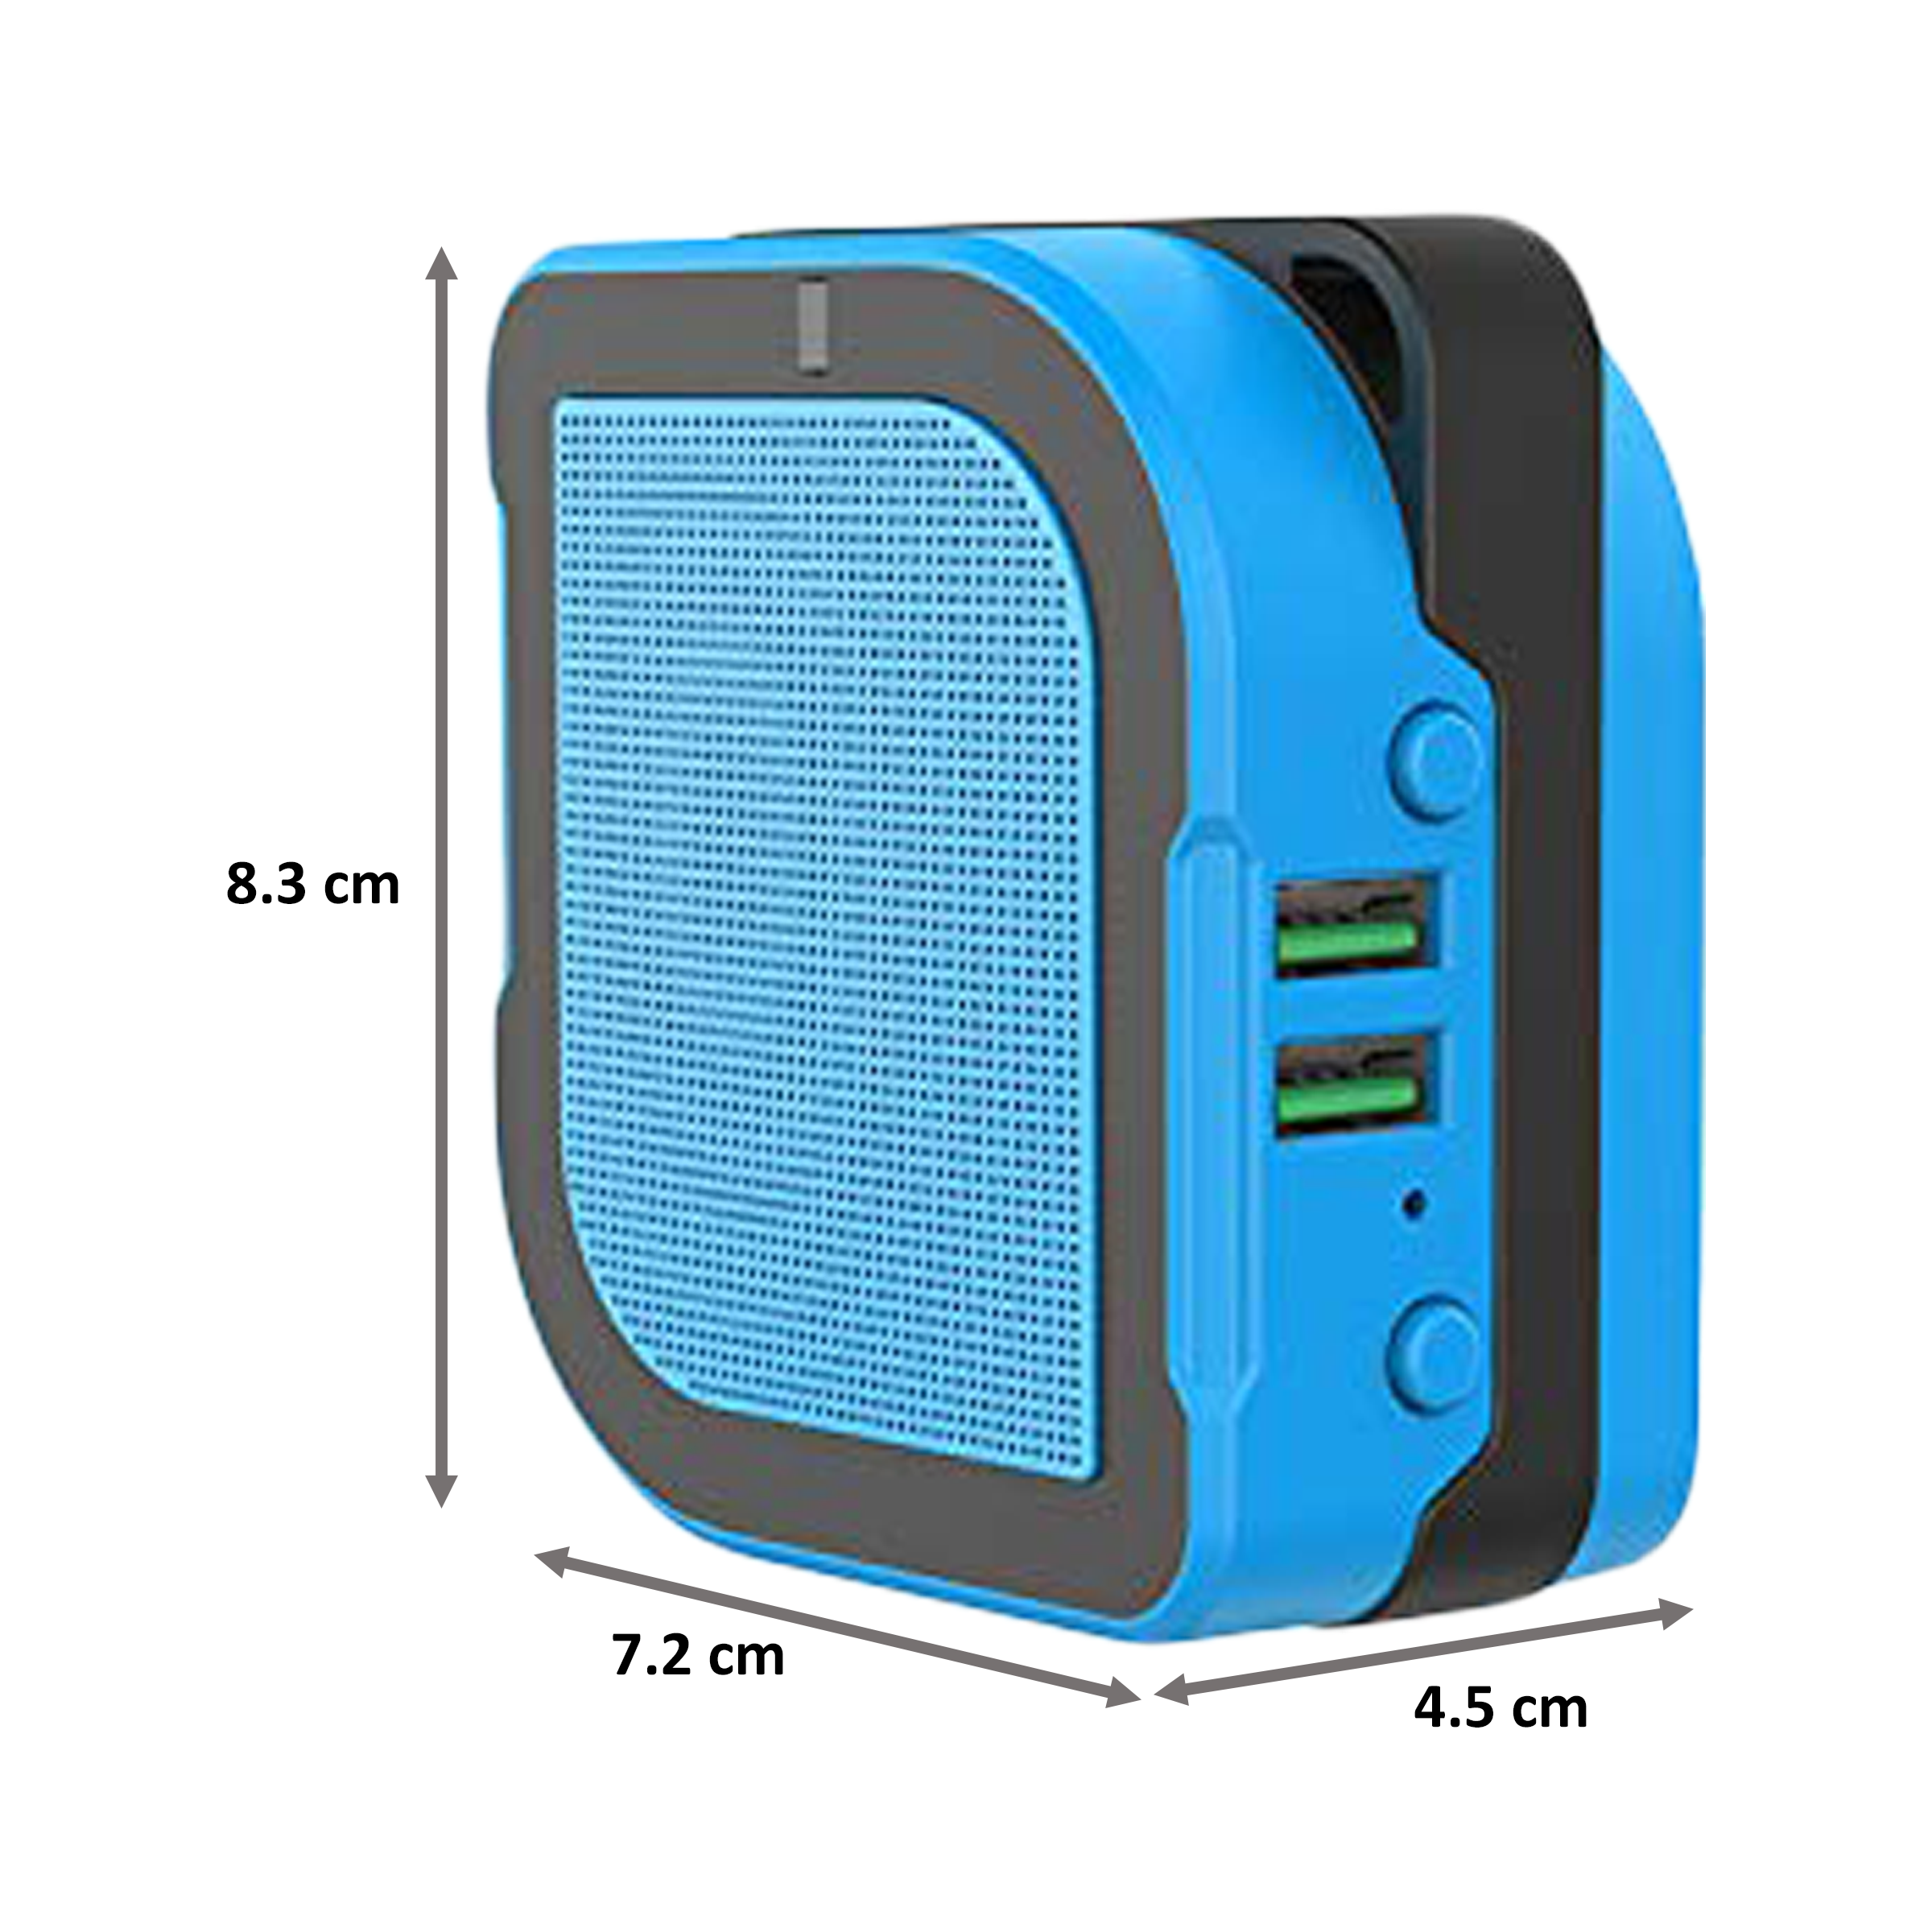 IGear Smarttech 3 in 1 Portable Speaker (iG-K003, Blue)_2